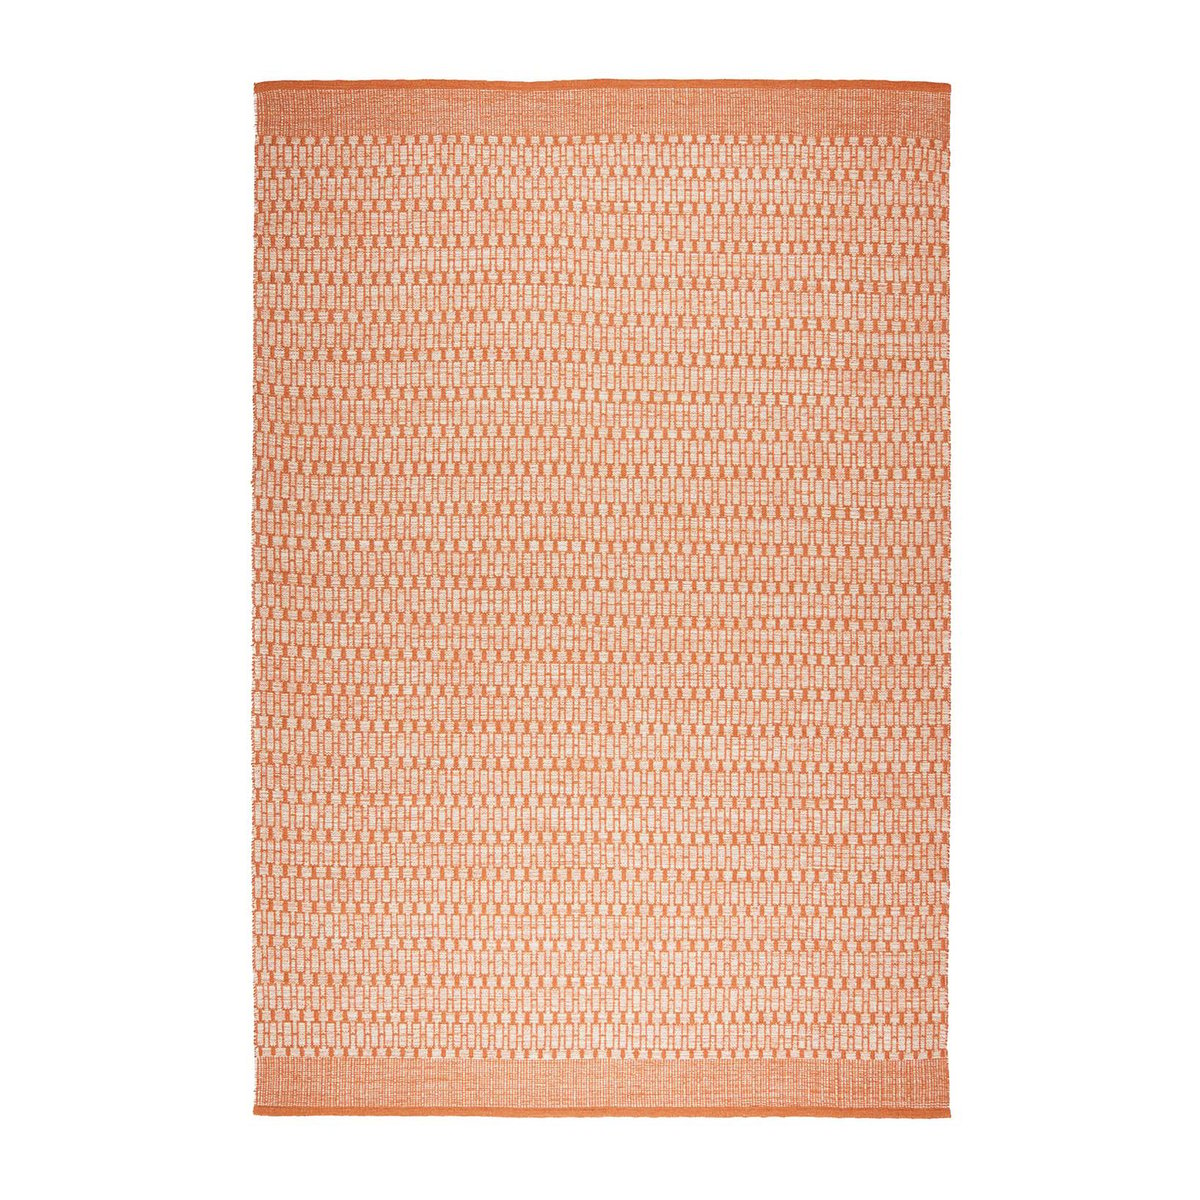 Chhatwal & Jonsson Mahi vloerkleed 200x300 cm Off white-orange